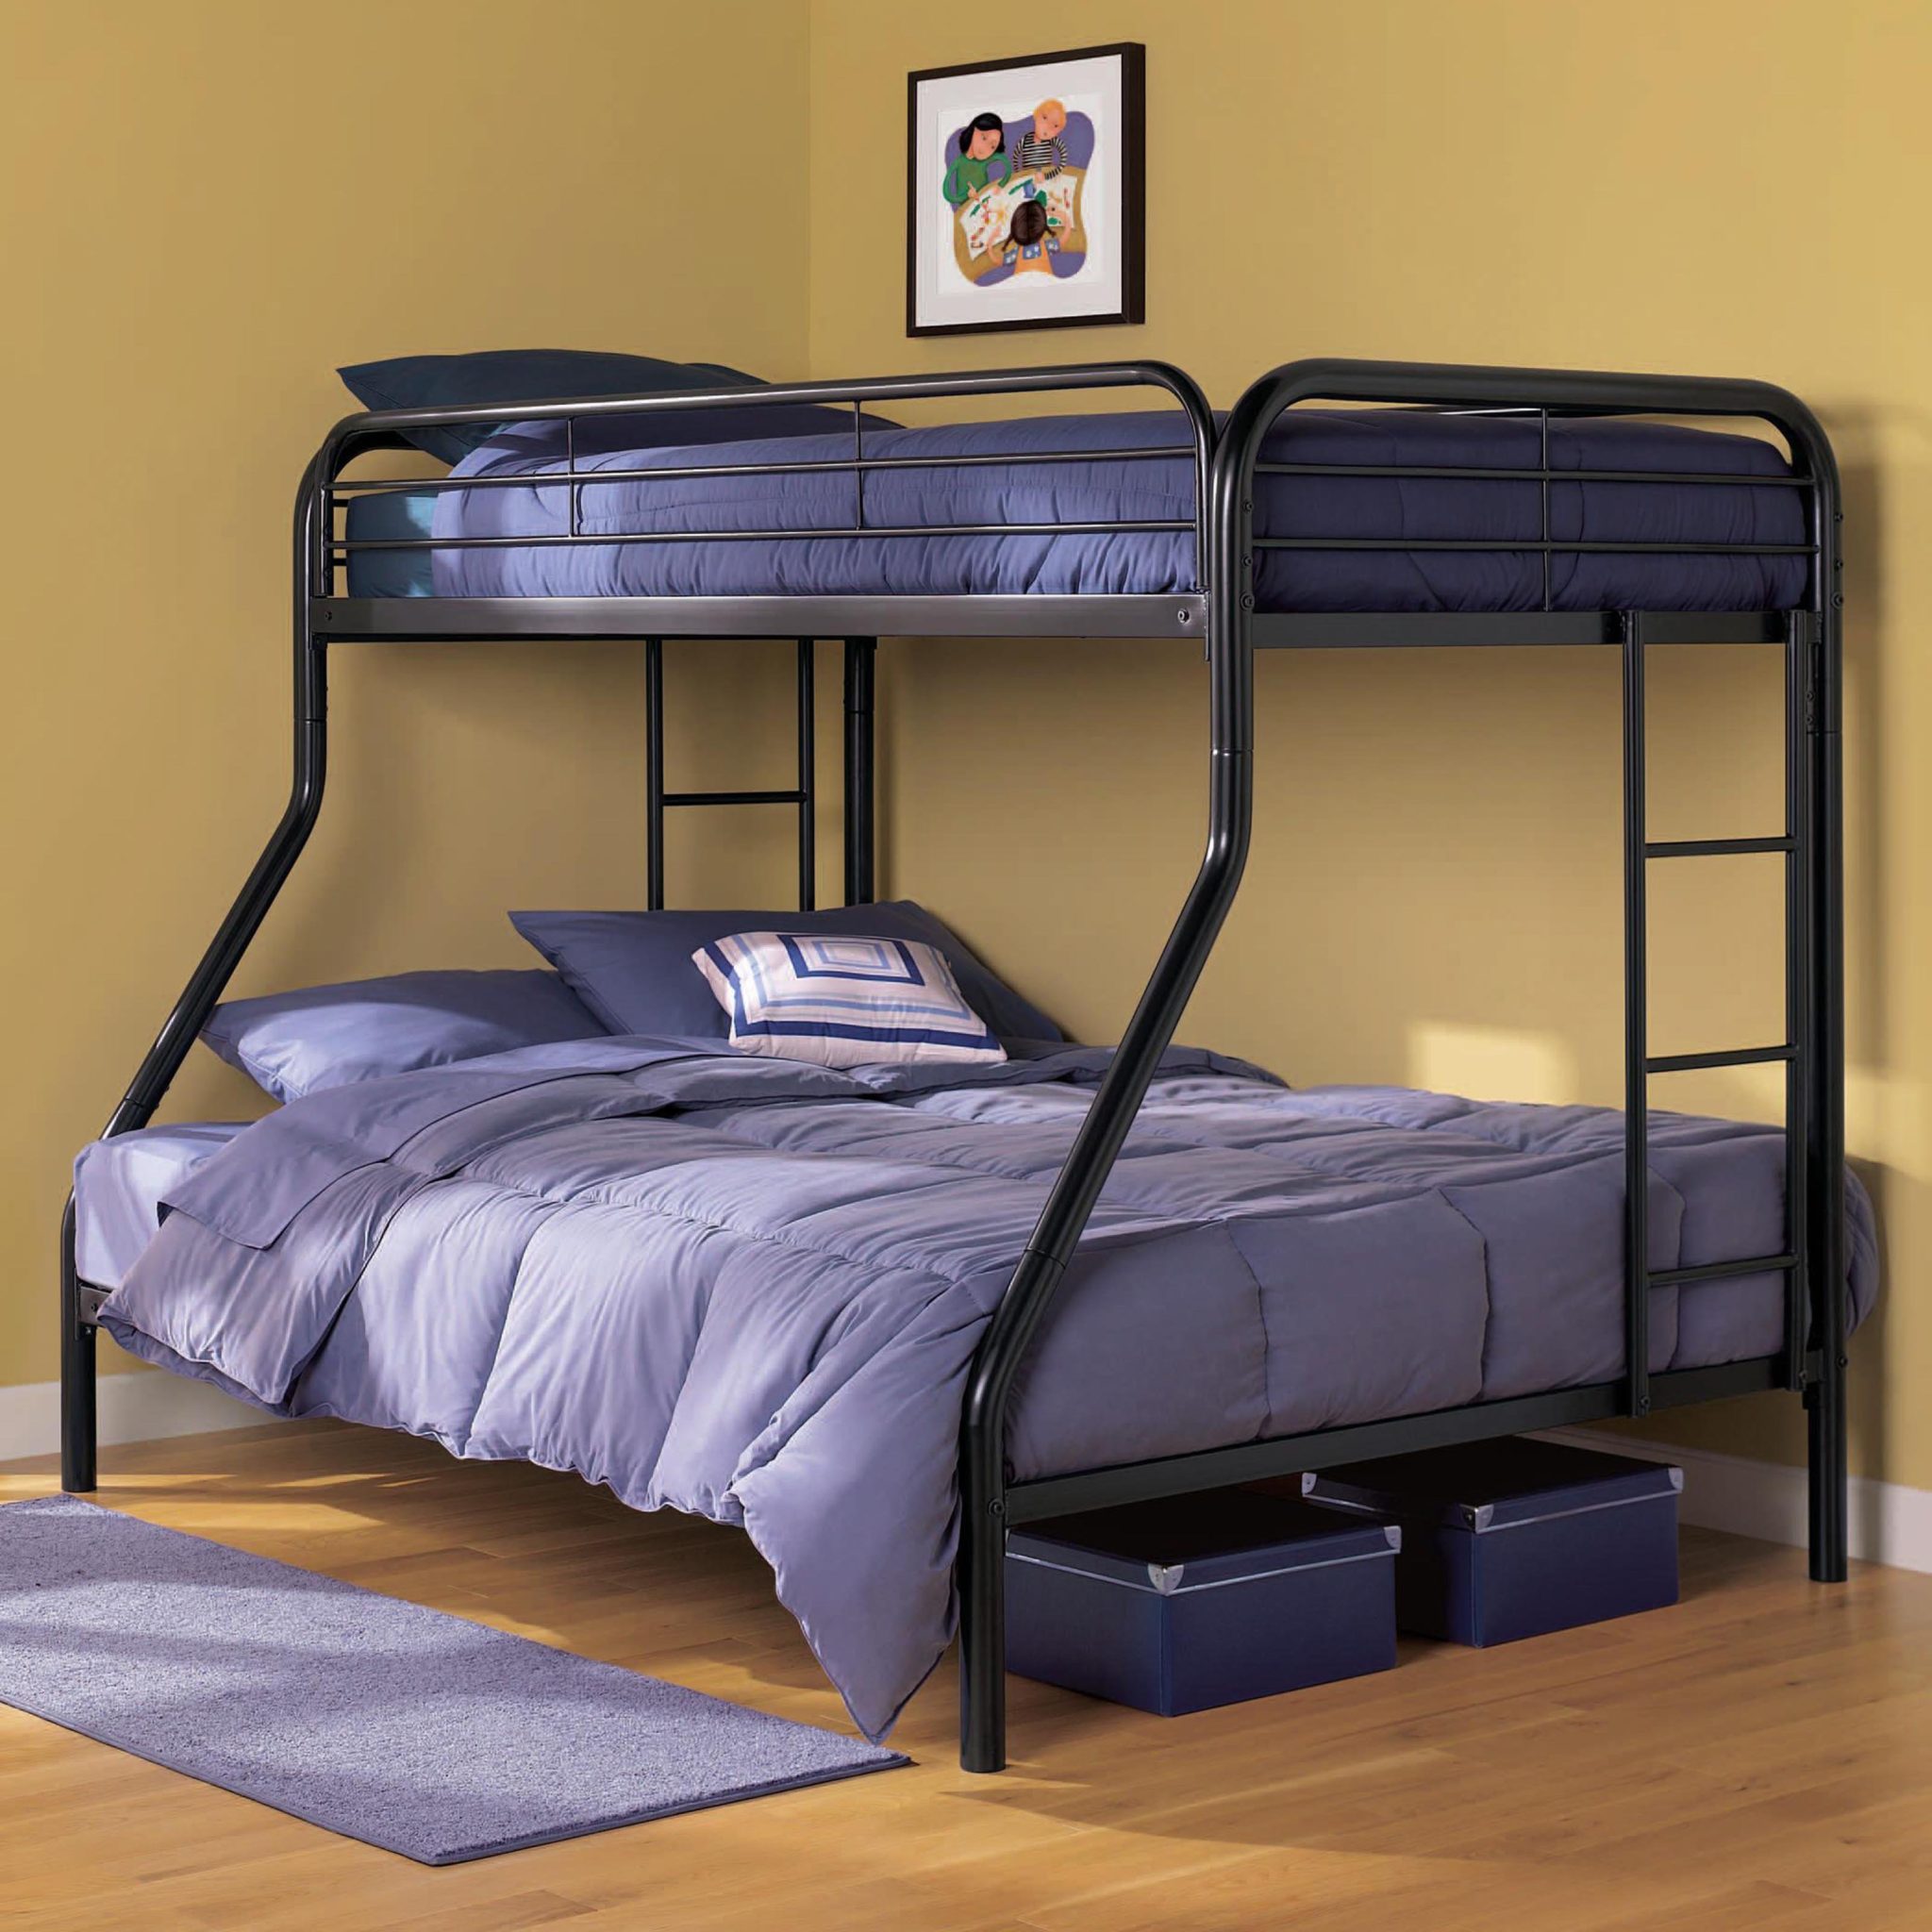 двуспальные кровати двухъярусные кровати